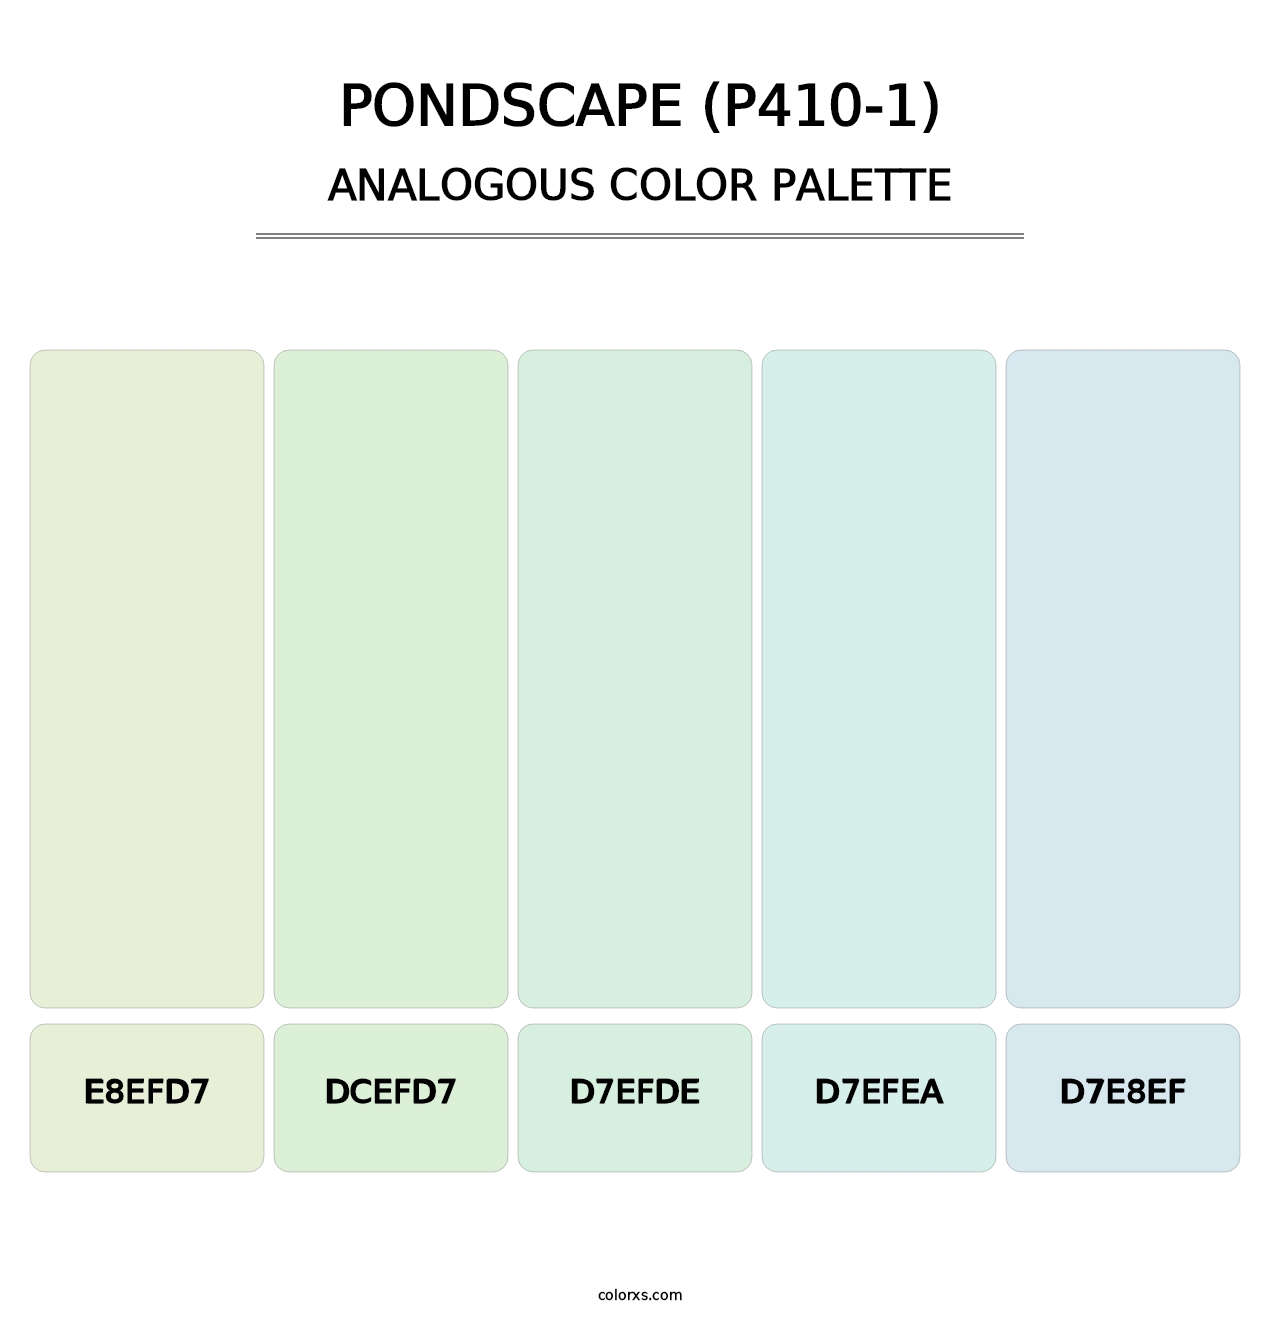 Pondscape (P410-1) - Analogous Color Palette